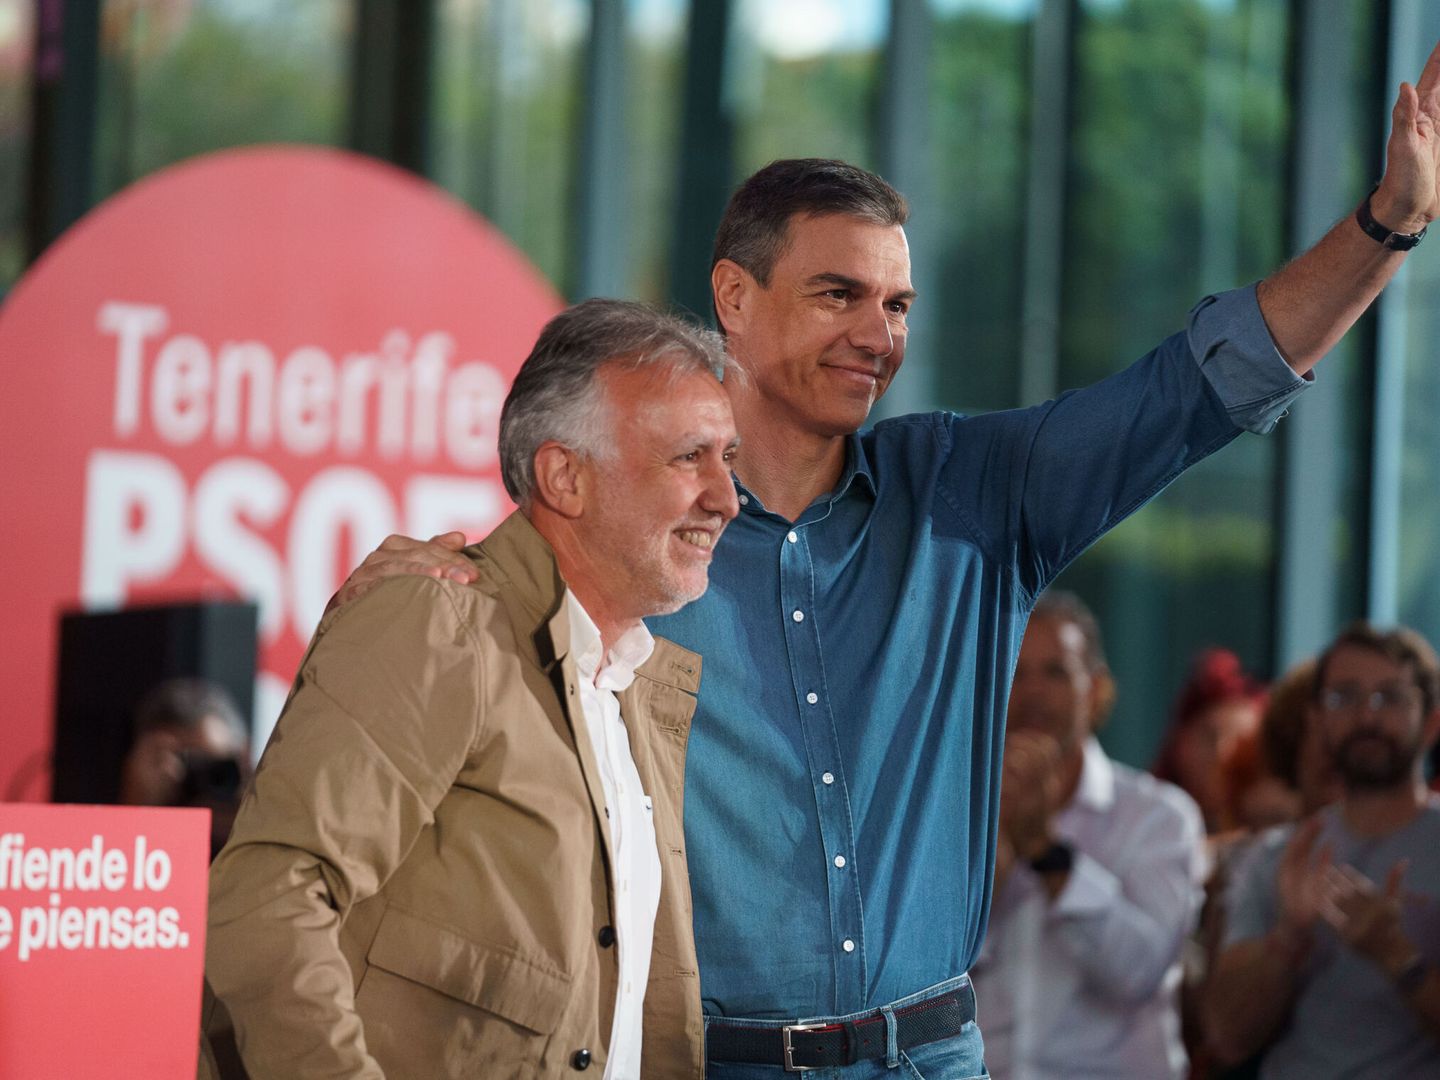 El presidente del Gobierno de España, Pedro Sánchez, junto al entonces candidato a la reelección a la presidencia de Canarias, Ángel Víctor Torres. (EFE/Ramón de la Rocha)